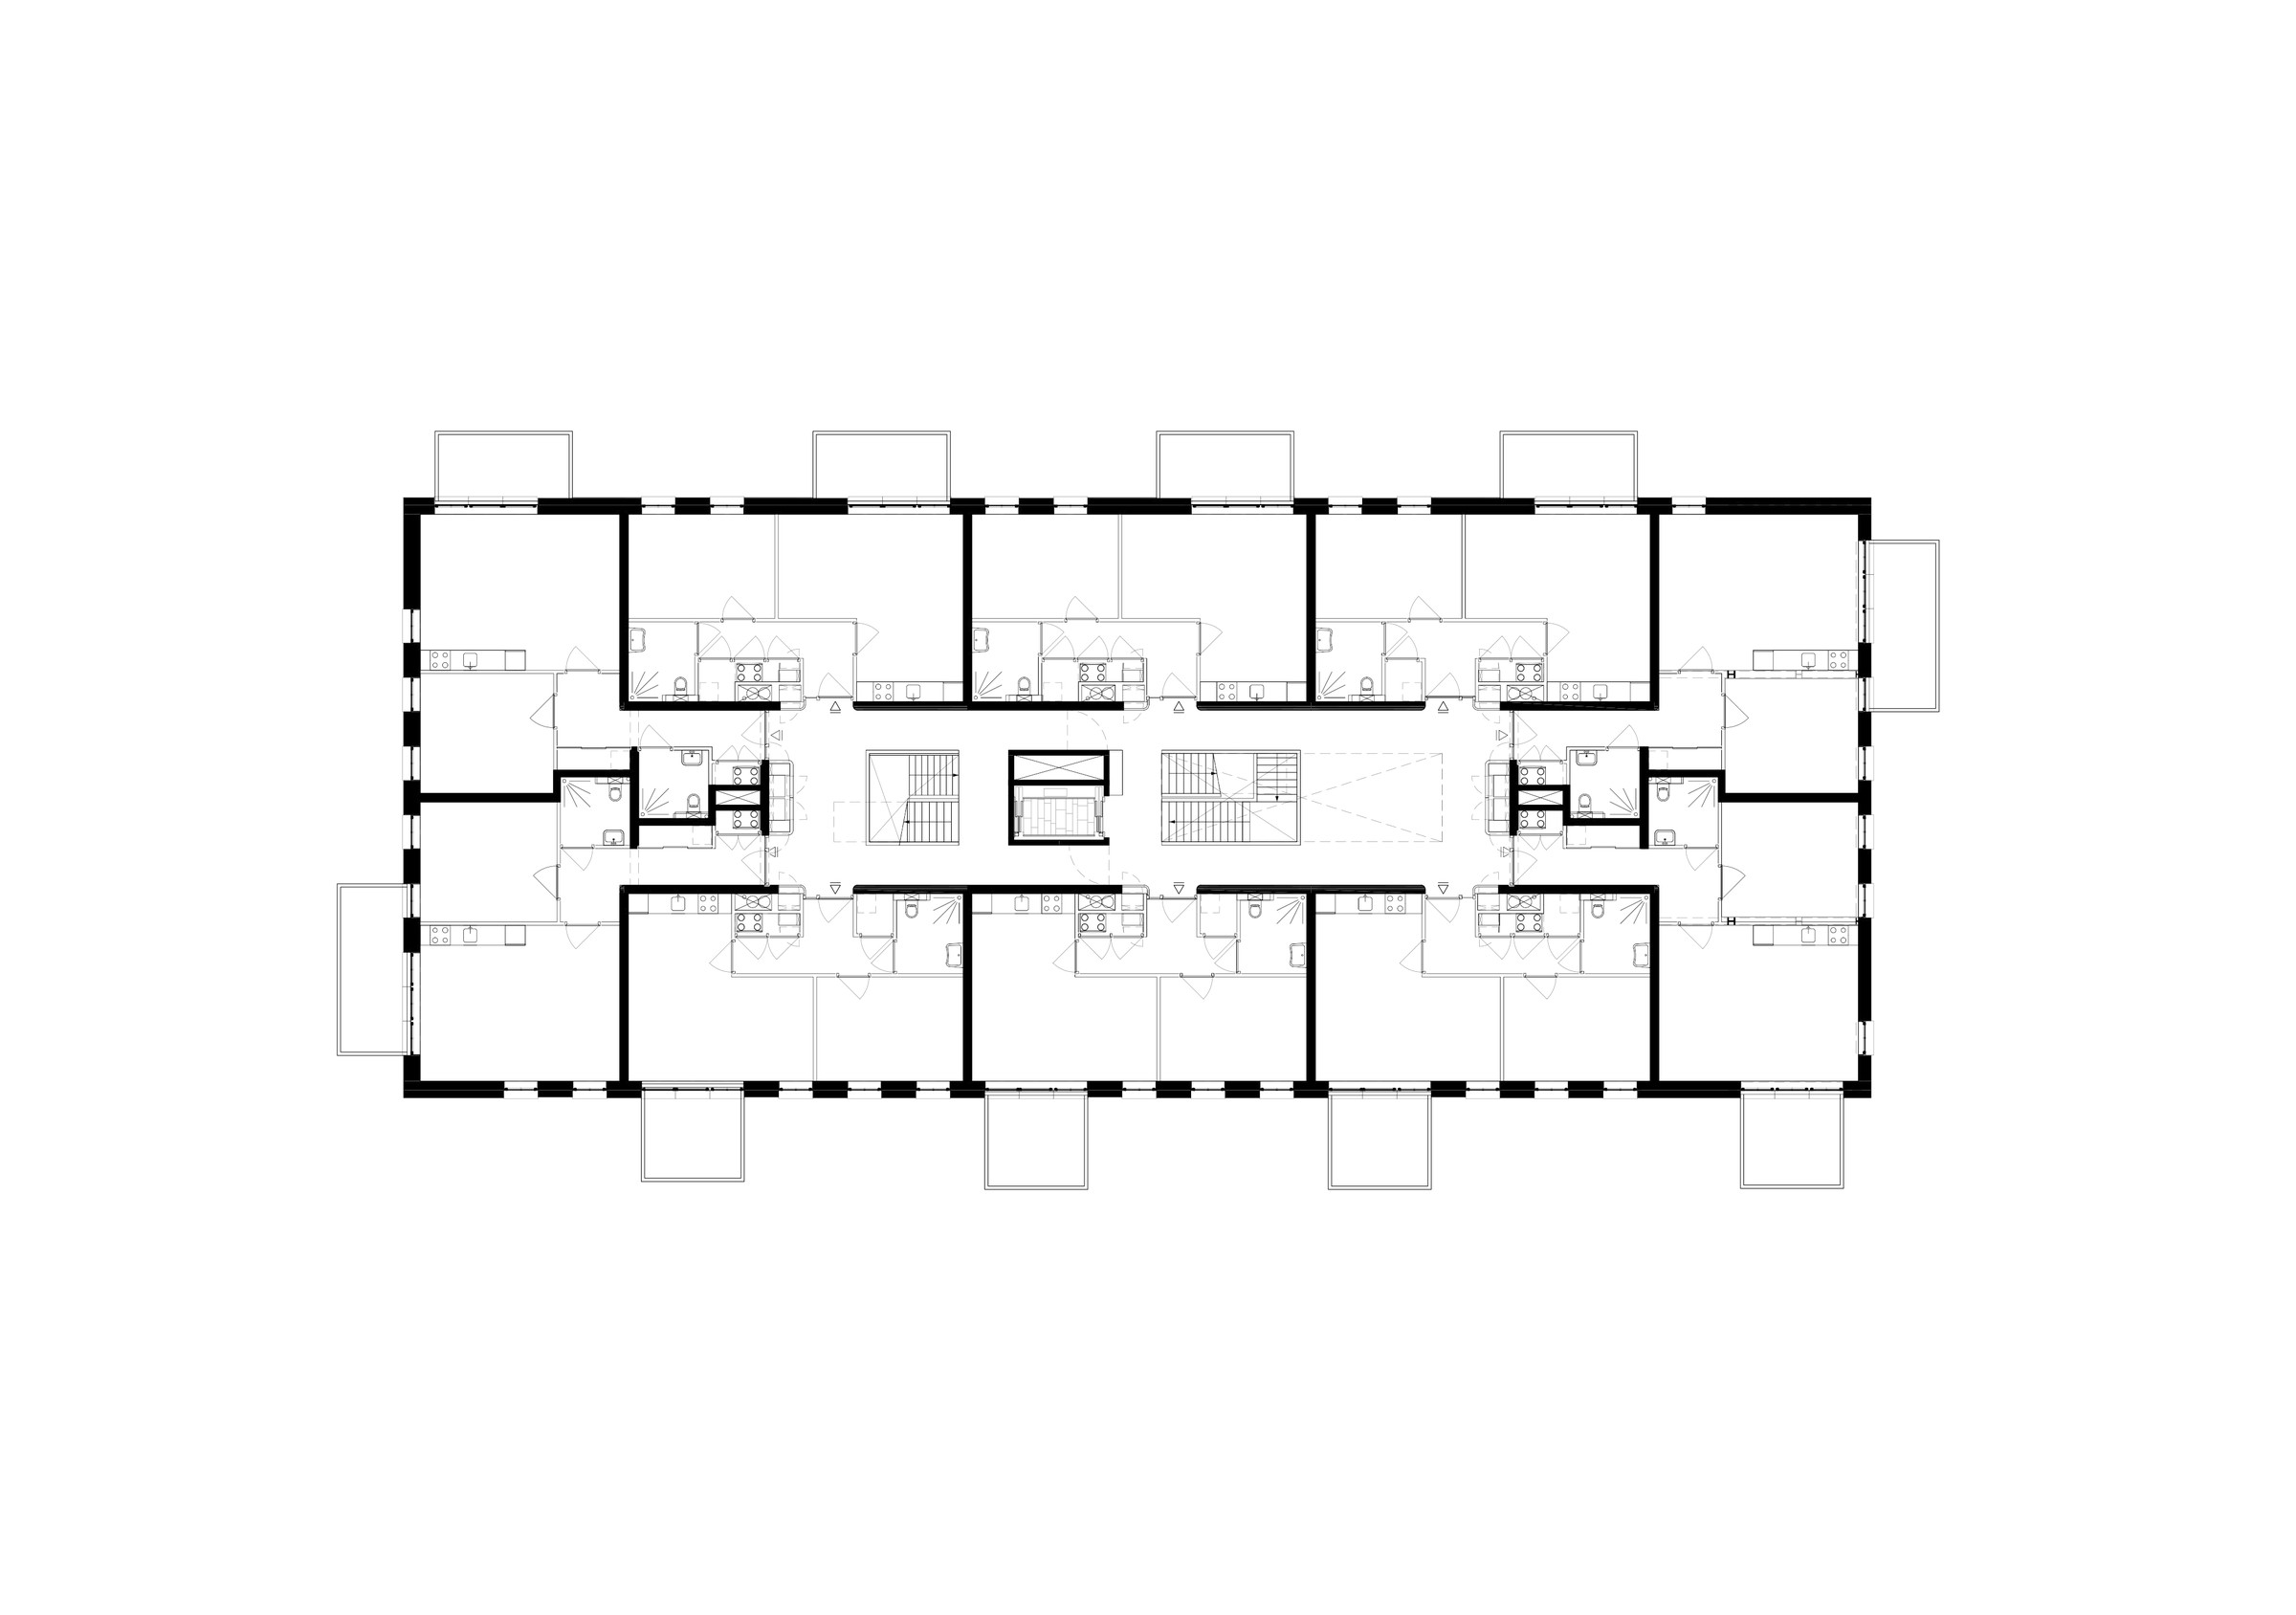 05-Zecc_Architecten-Zuiderheide-Hilversum-floor_pla.jpg